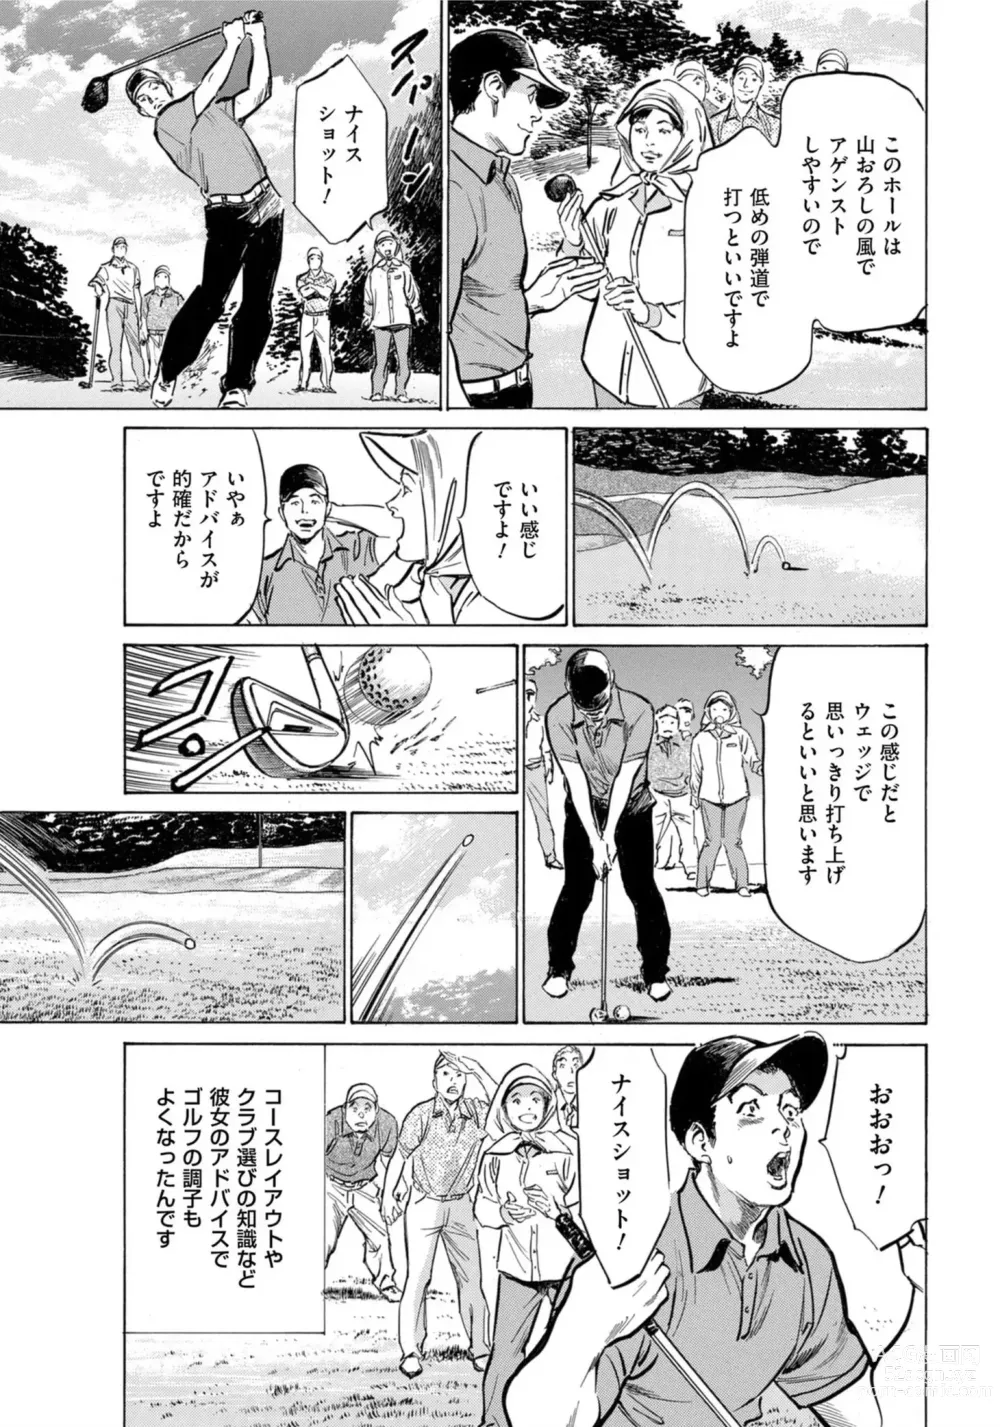 Page 4 of manga Hontou ni Atta Omowazu Zawatsuku Totteoki no Hanashi 14 episodes